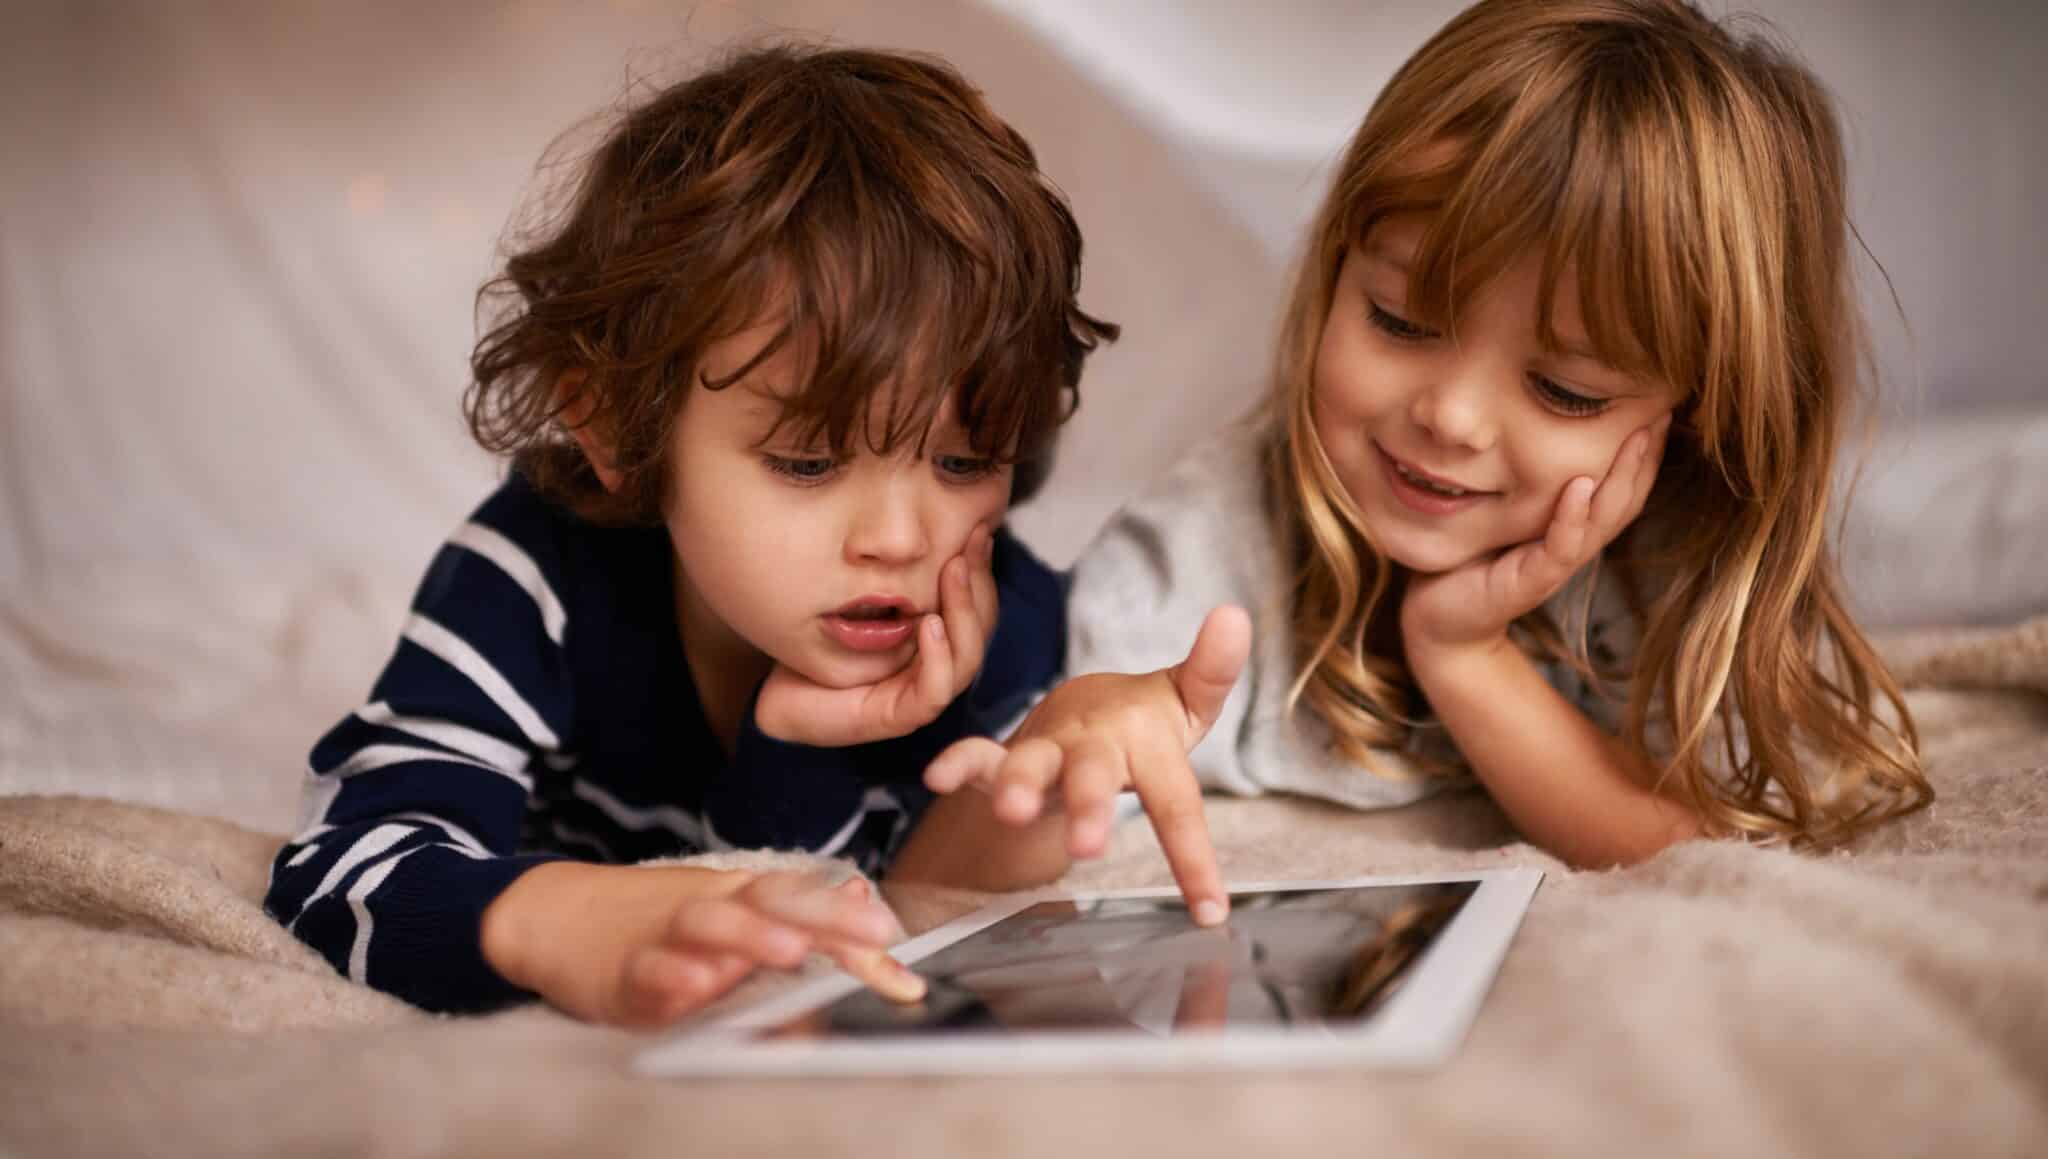 Les écrans: néfastes pour votre enfant?